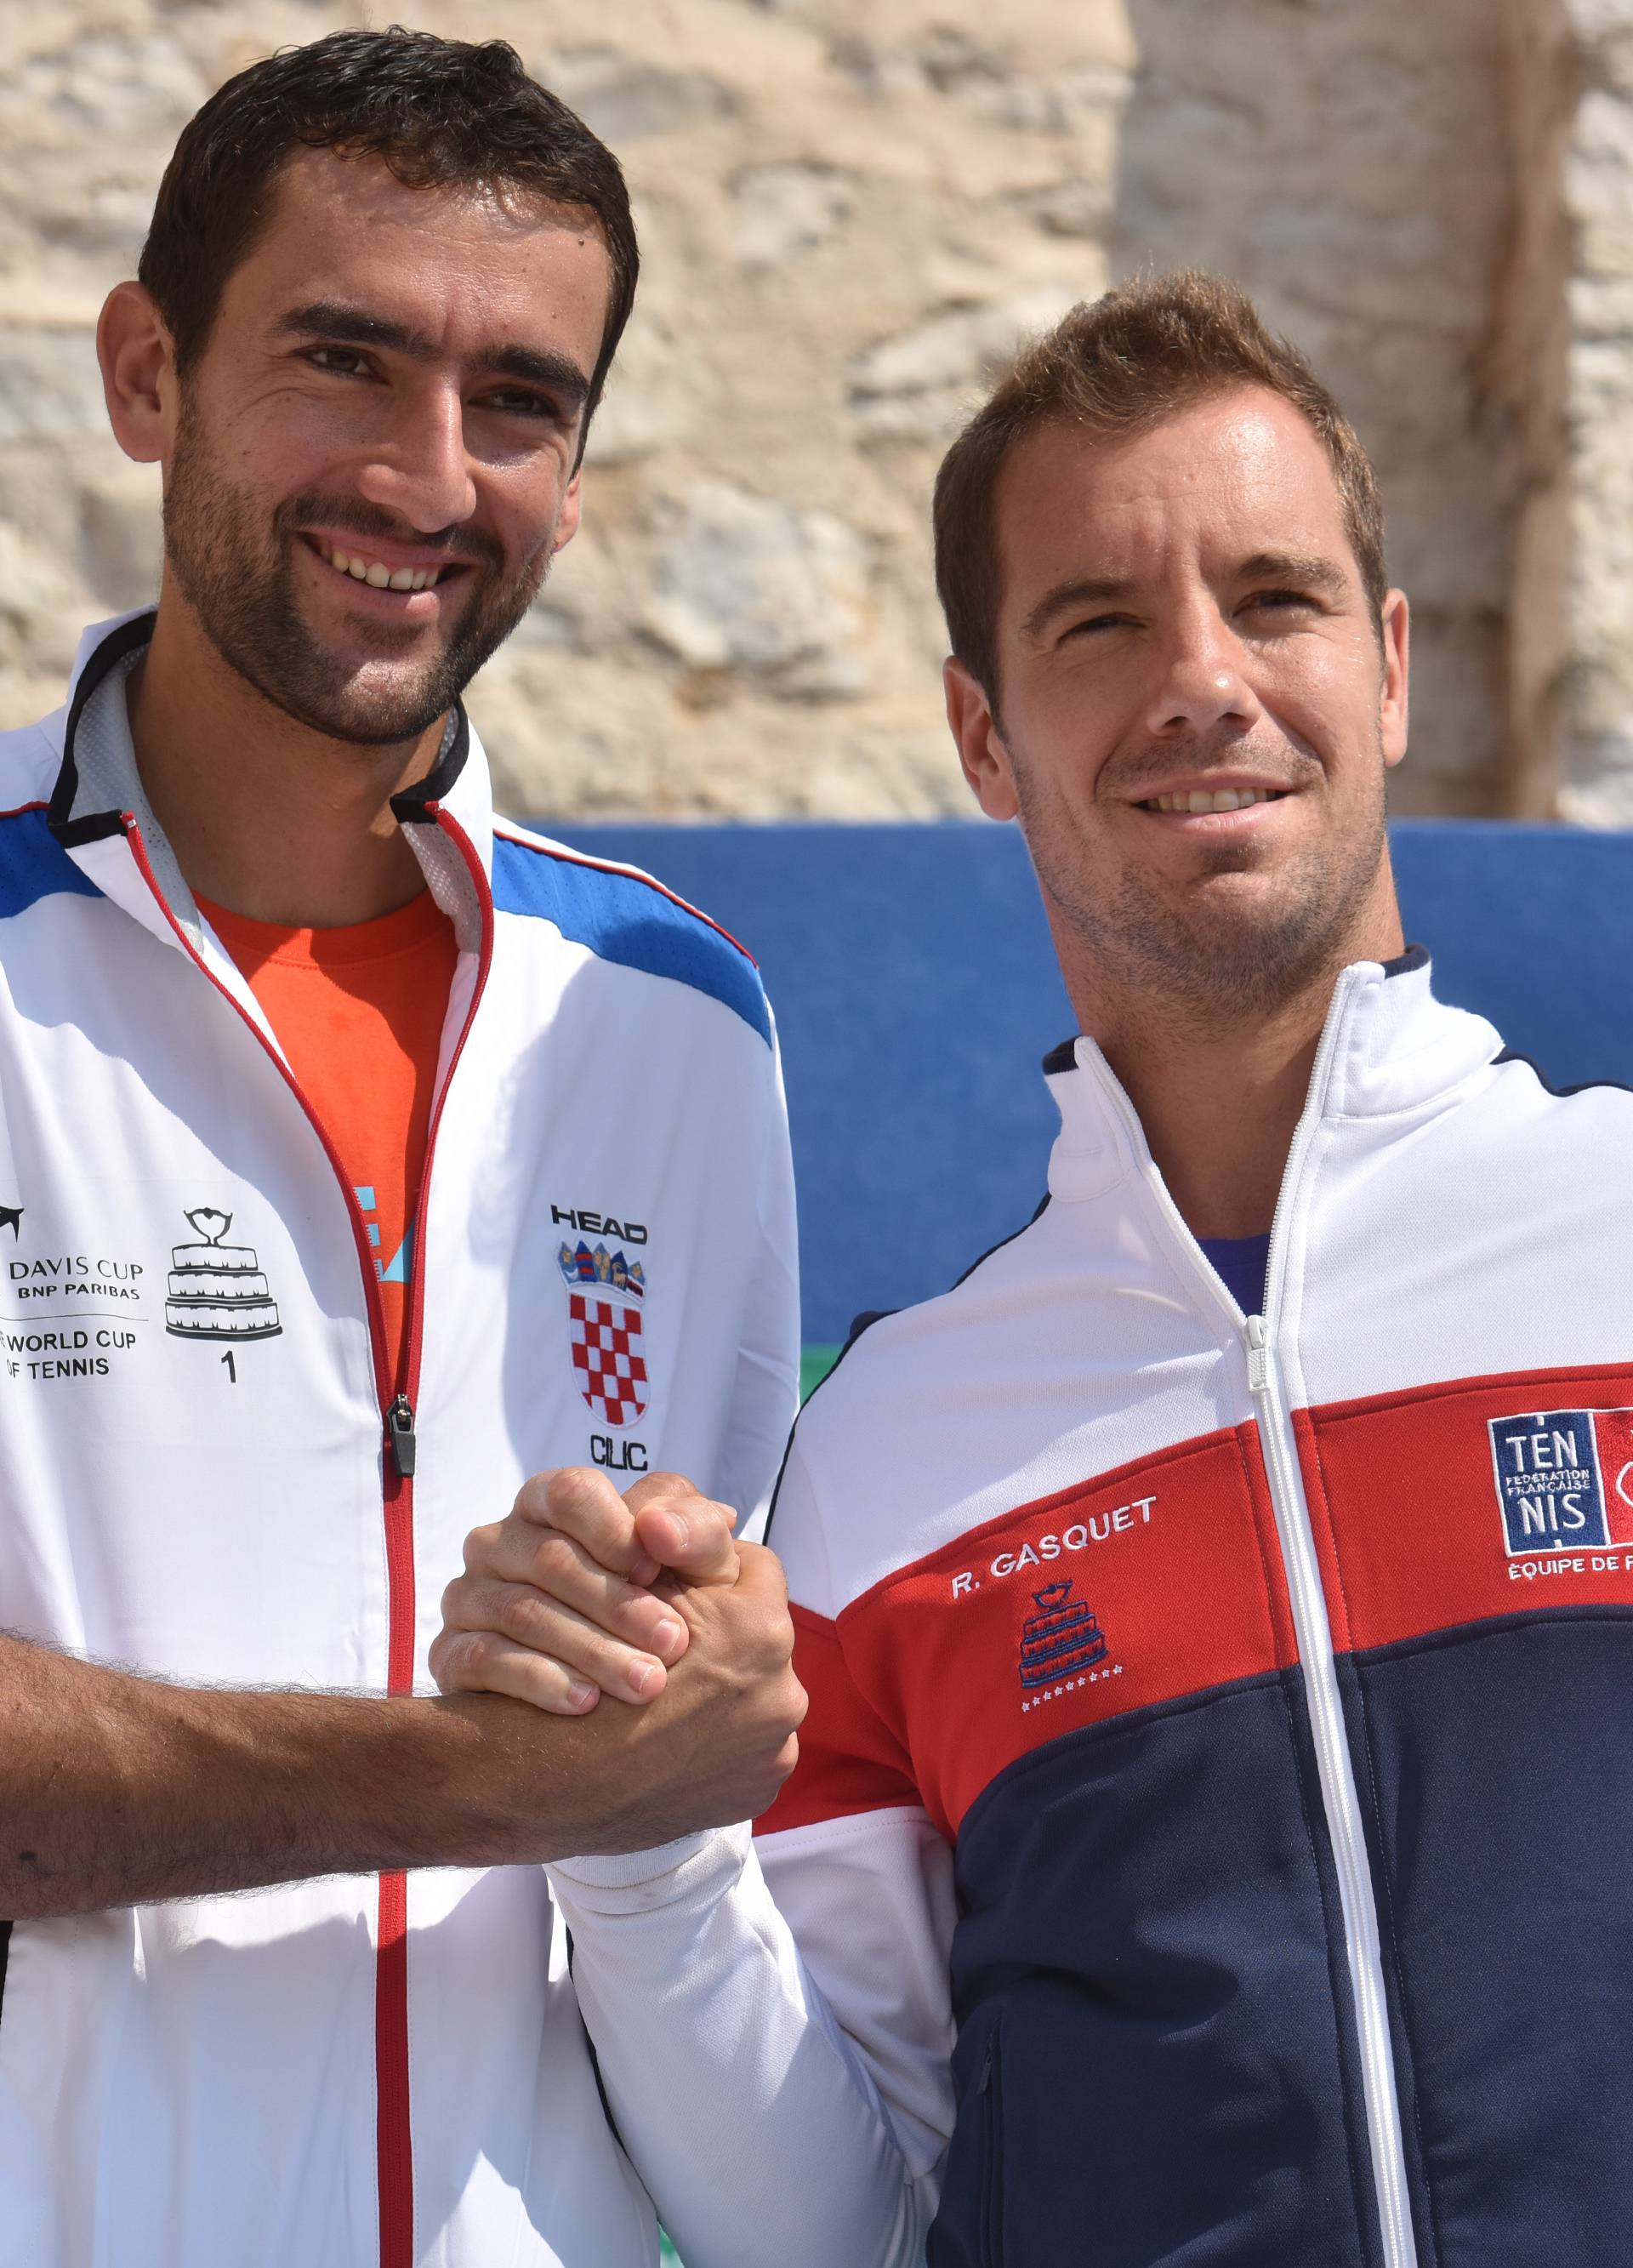 Davis Cup otvara Ćorić protiv Gasqueta, par Dodig i Draganja